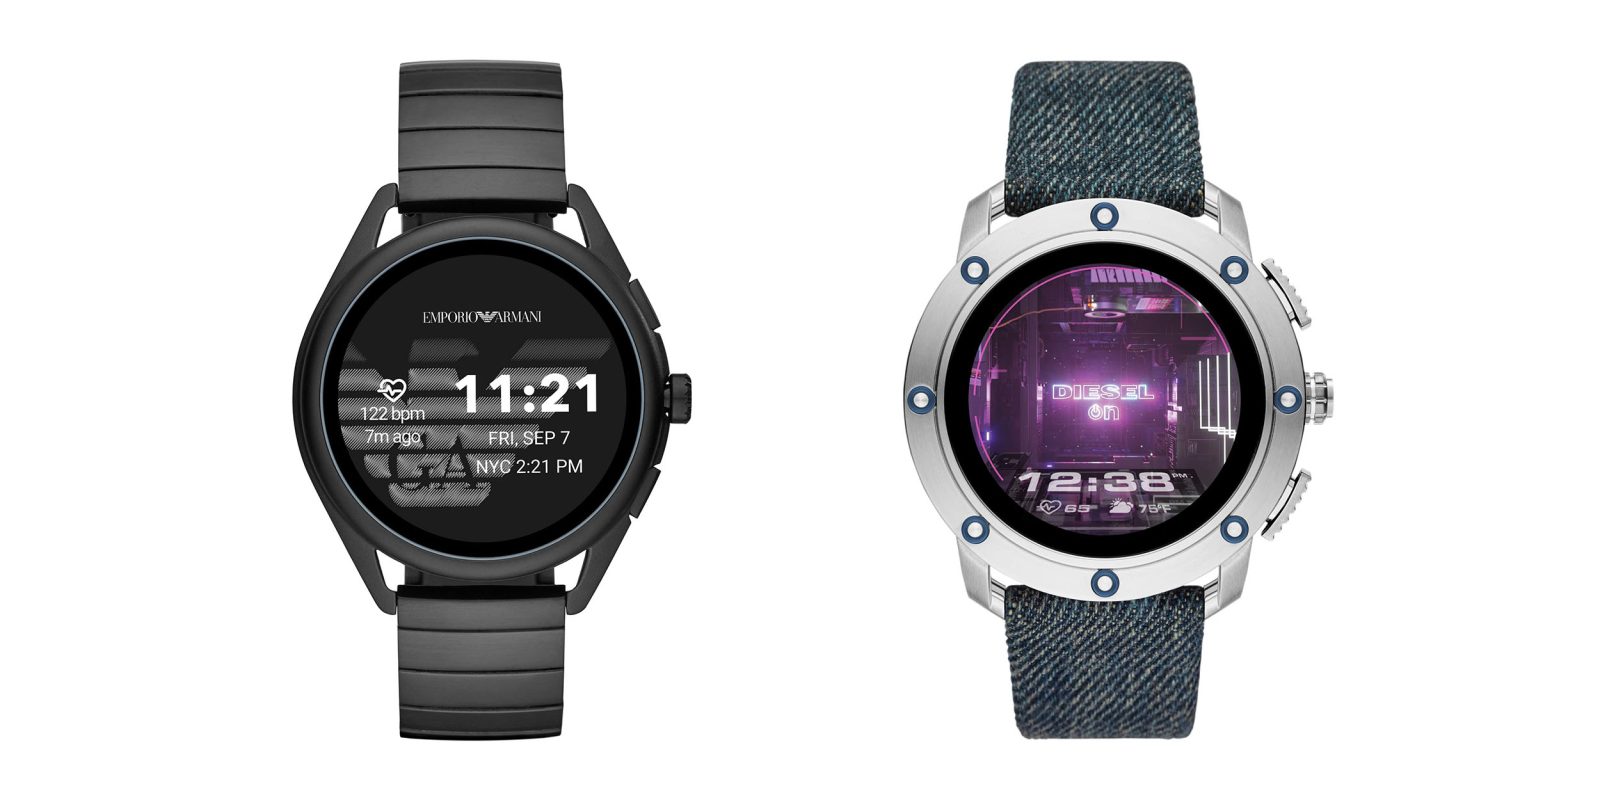 diesel armani wear os 1gb ram smartwatches